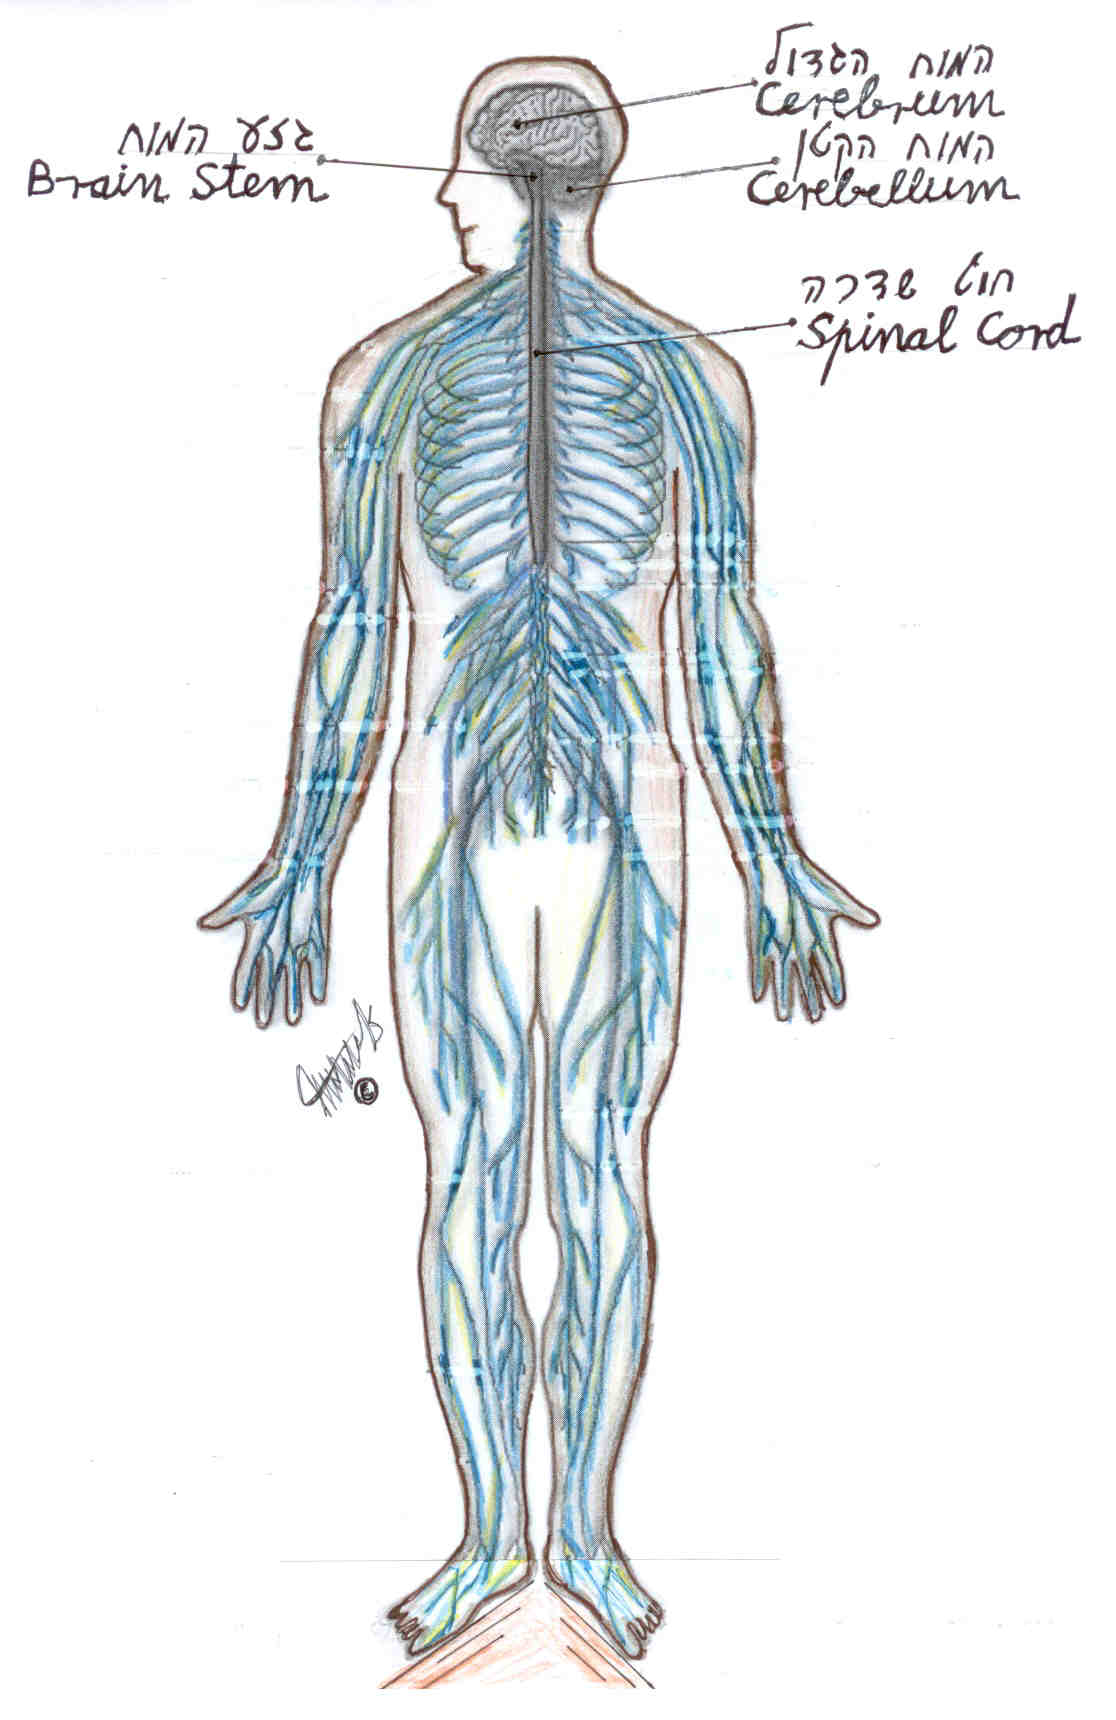 חוט שדרה מעביר את העצבים מהמוח לכל גופנו. אם מוחנו תקין ובגופנו עמוד שדרה עם מבנה אנטומי תקין קרוב לוודאי שמערכת העצבים הפריפריאלית תעבוד כראוי.